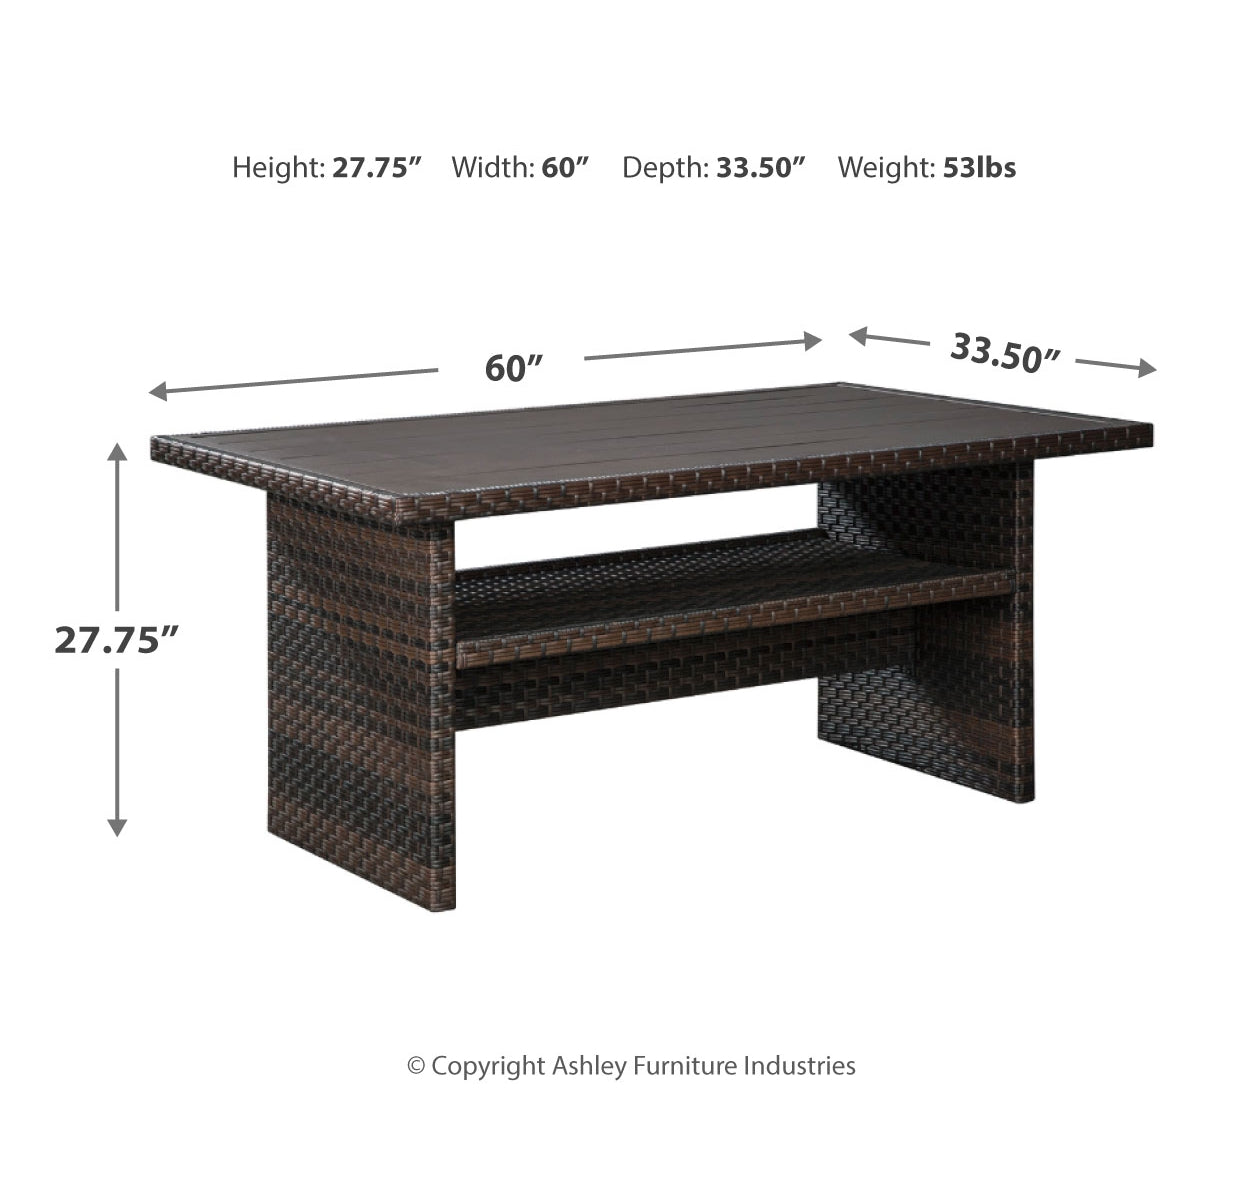 Easy Isle Multi-Use Table